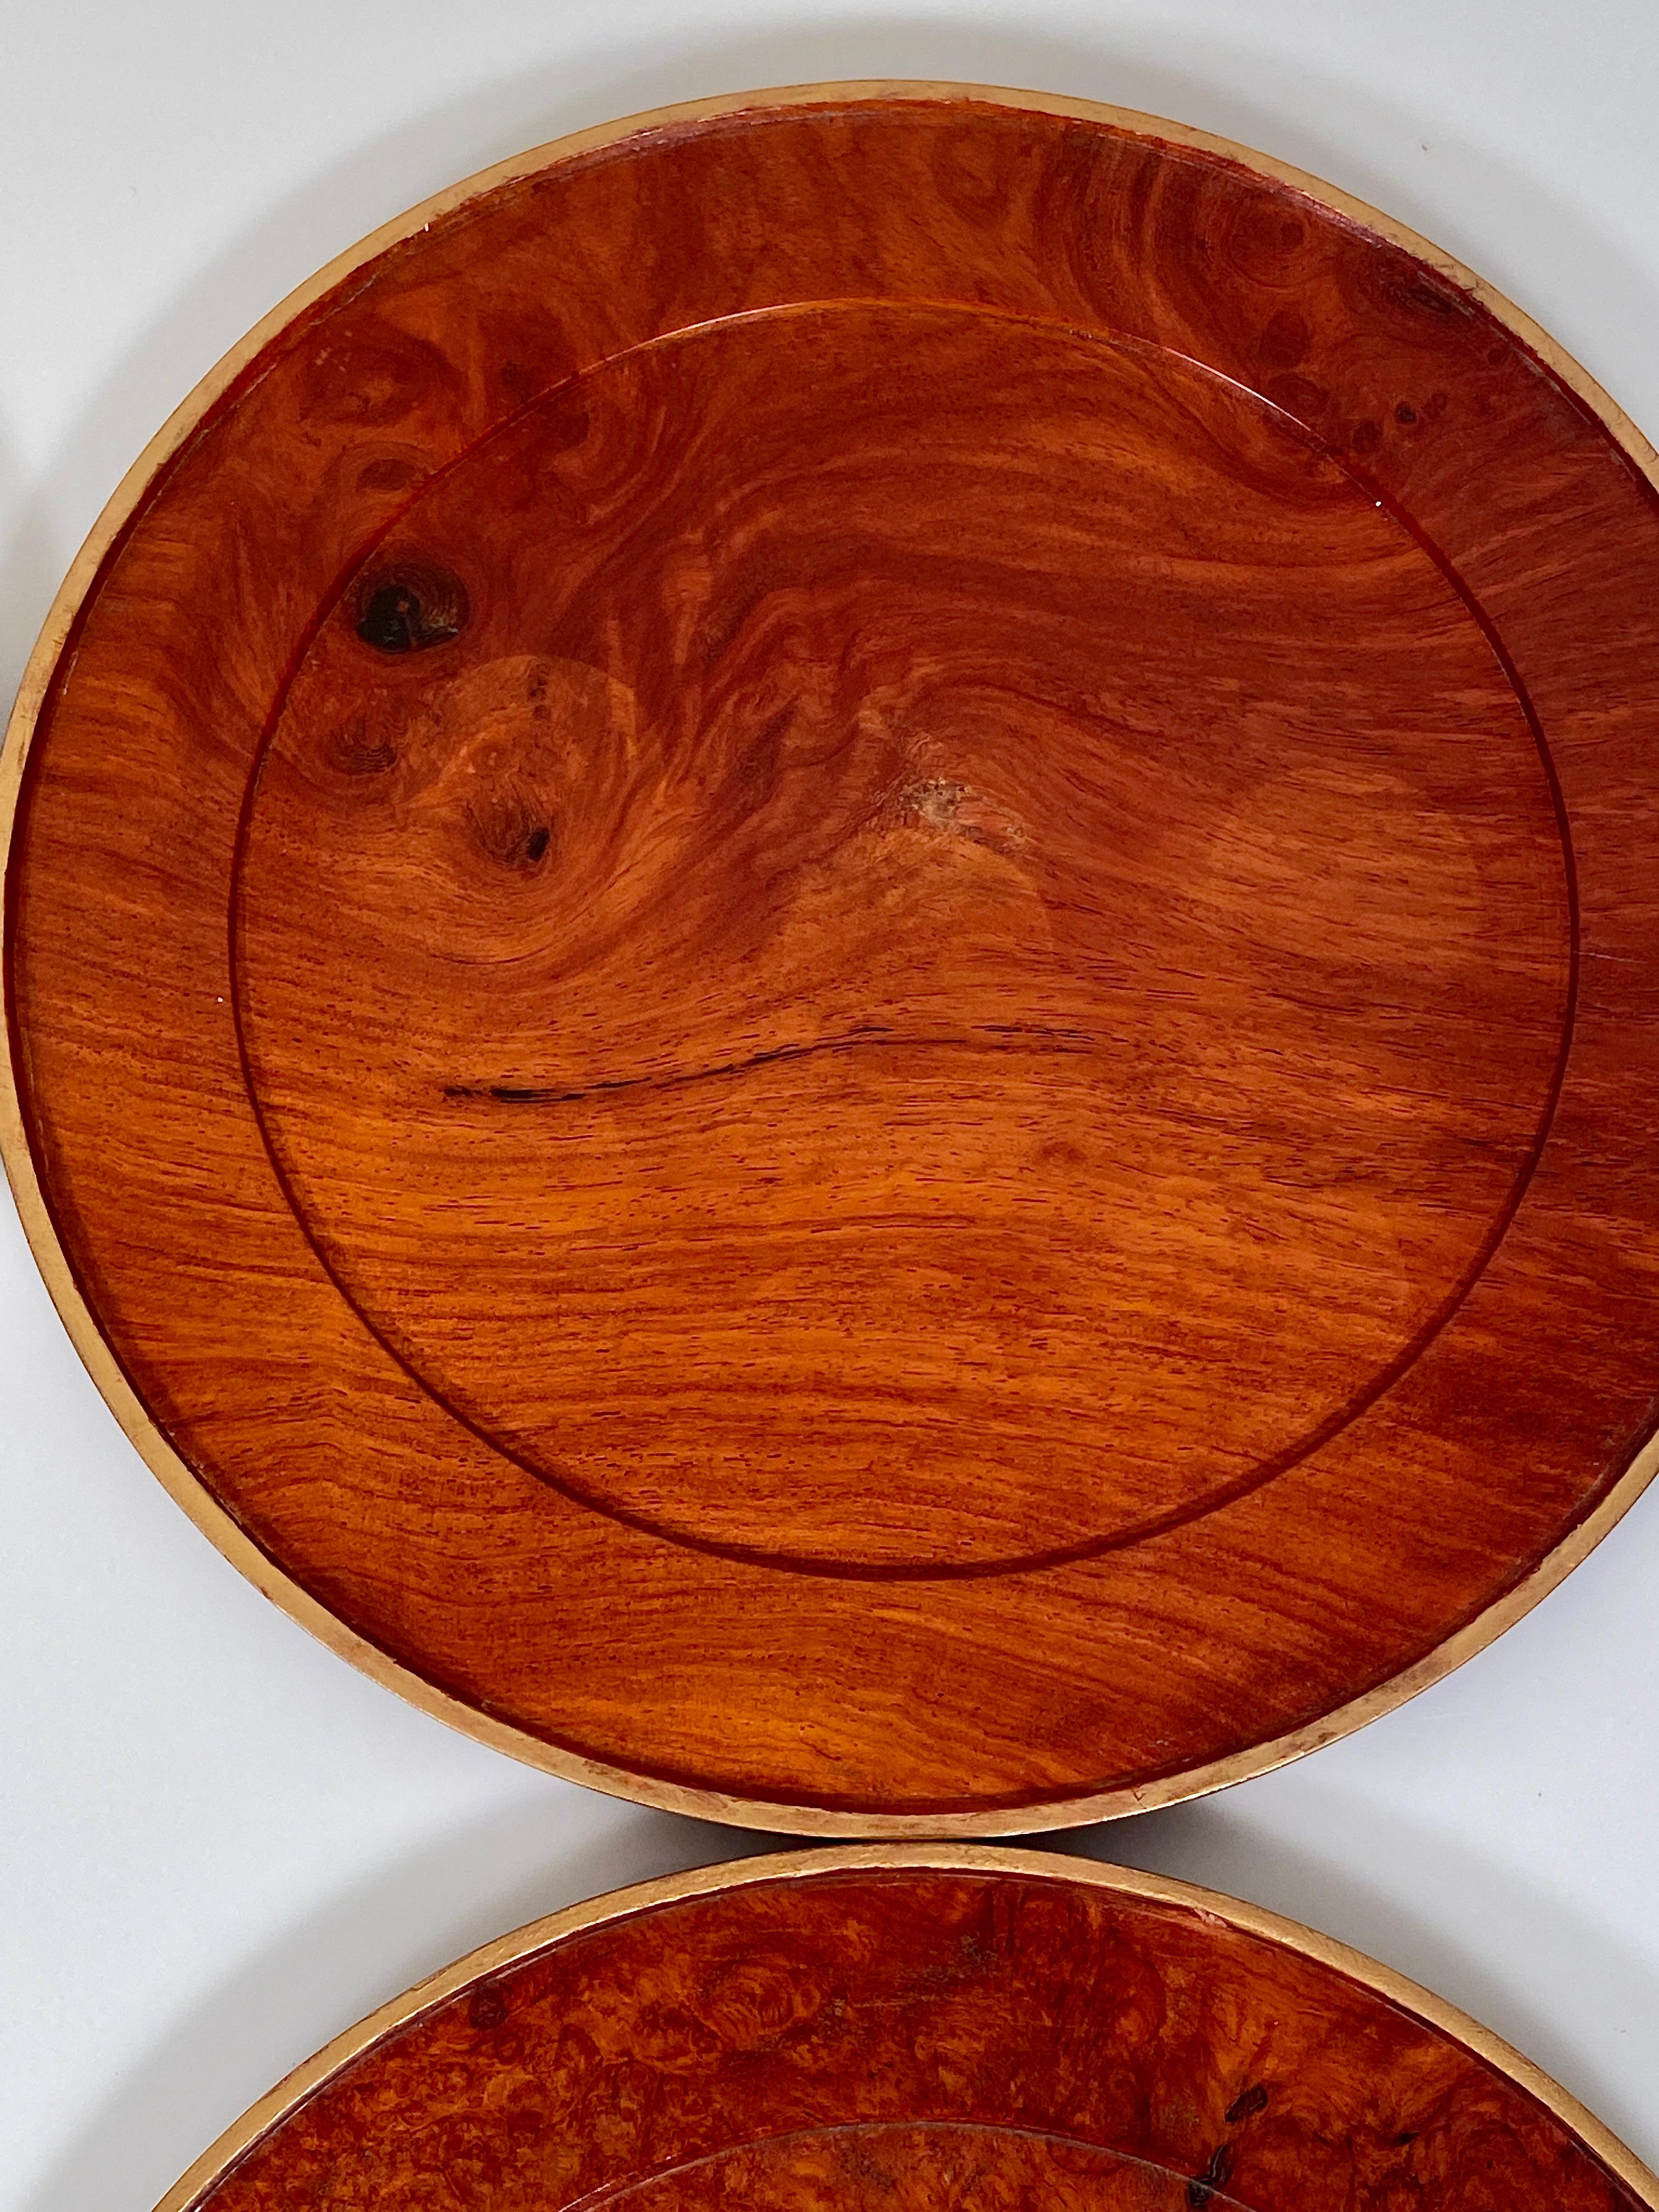 Charger Plates Burr Walnut PlaceMat Carved Wood Vintage Modernist 8